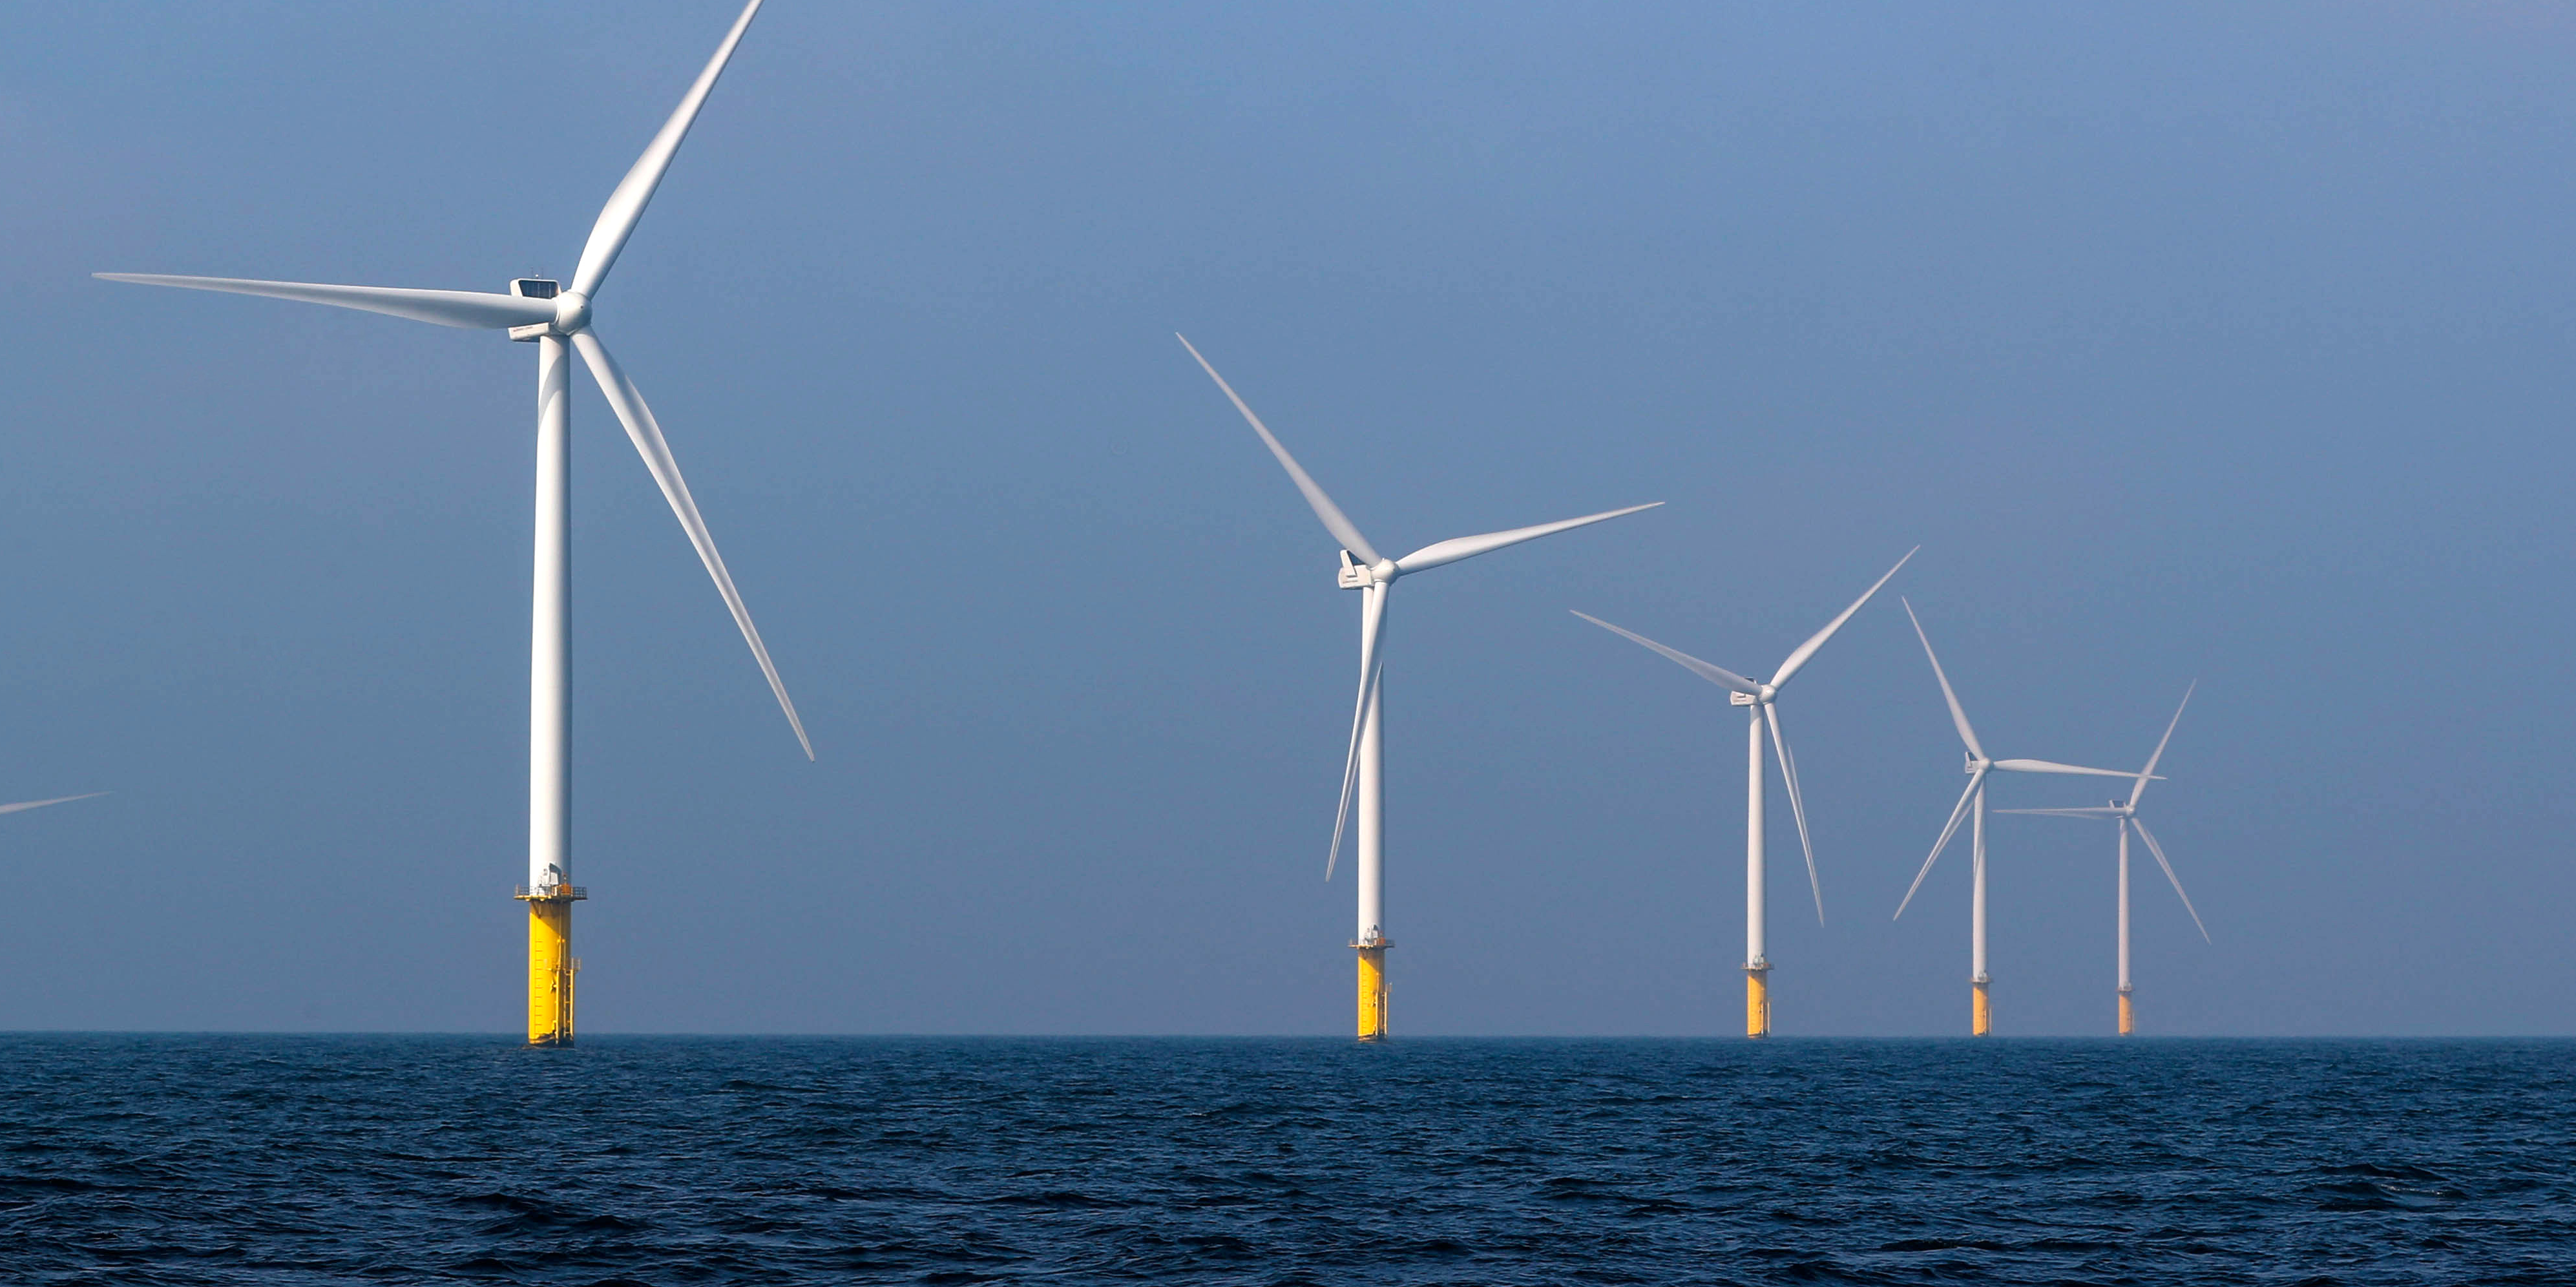 Parc éolien offshore de Dunkerque : le groupement EDF remporte l'appel d'offres